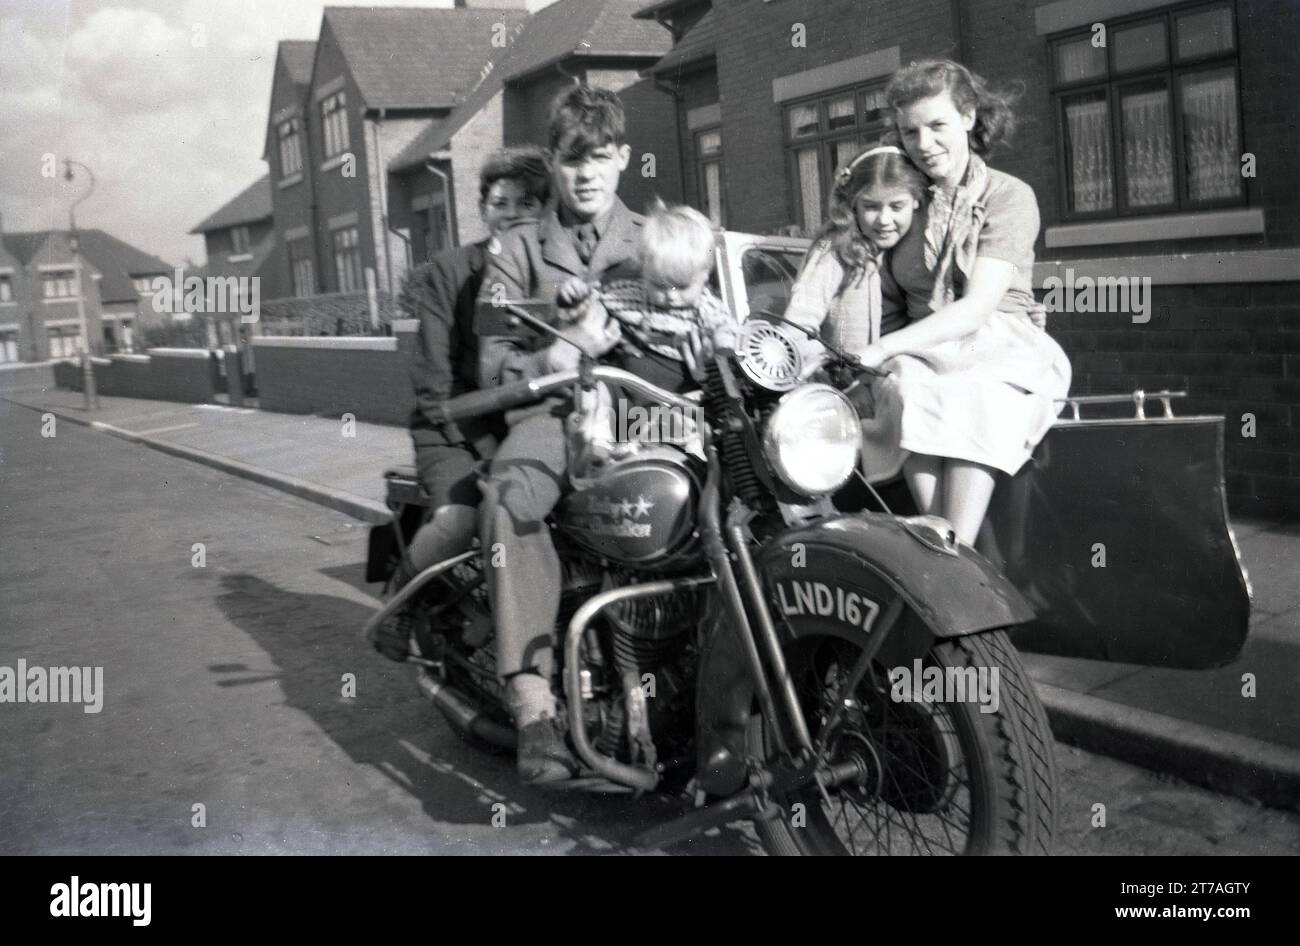 Anni '1950, storica, fuori in una strada, una famiglia seduta su una motocicletta Harley Davidson e sidecar di produzione americana dell'epoca per una foto, Oldham, Inghilterra, Regno Unito. Foto Stock